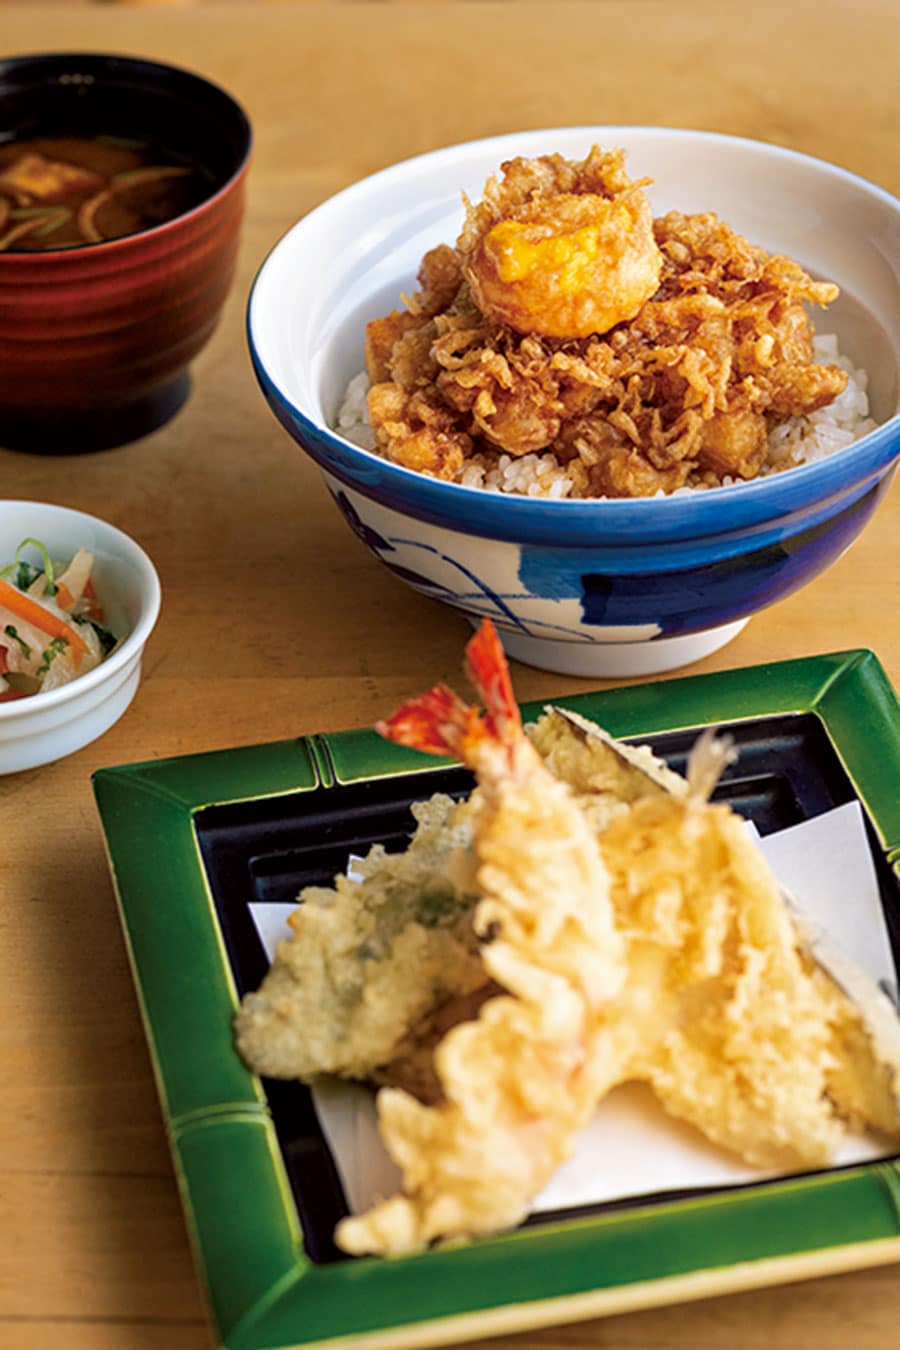 黄身のっけ定食 1,300円。かき揚げの上に黄身だけの天ぷらが。箸で割ると半熟卵黄がトロリ。エビ、キス、野菜3種の天ぷらも付いてボリュームたっぷり。味噌汁、香の物付き。